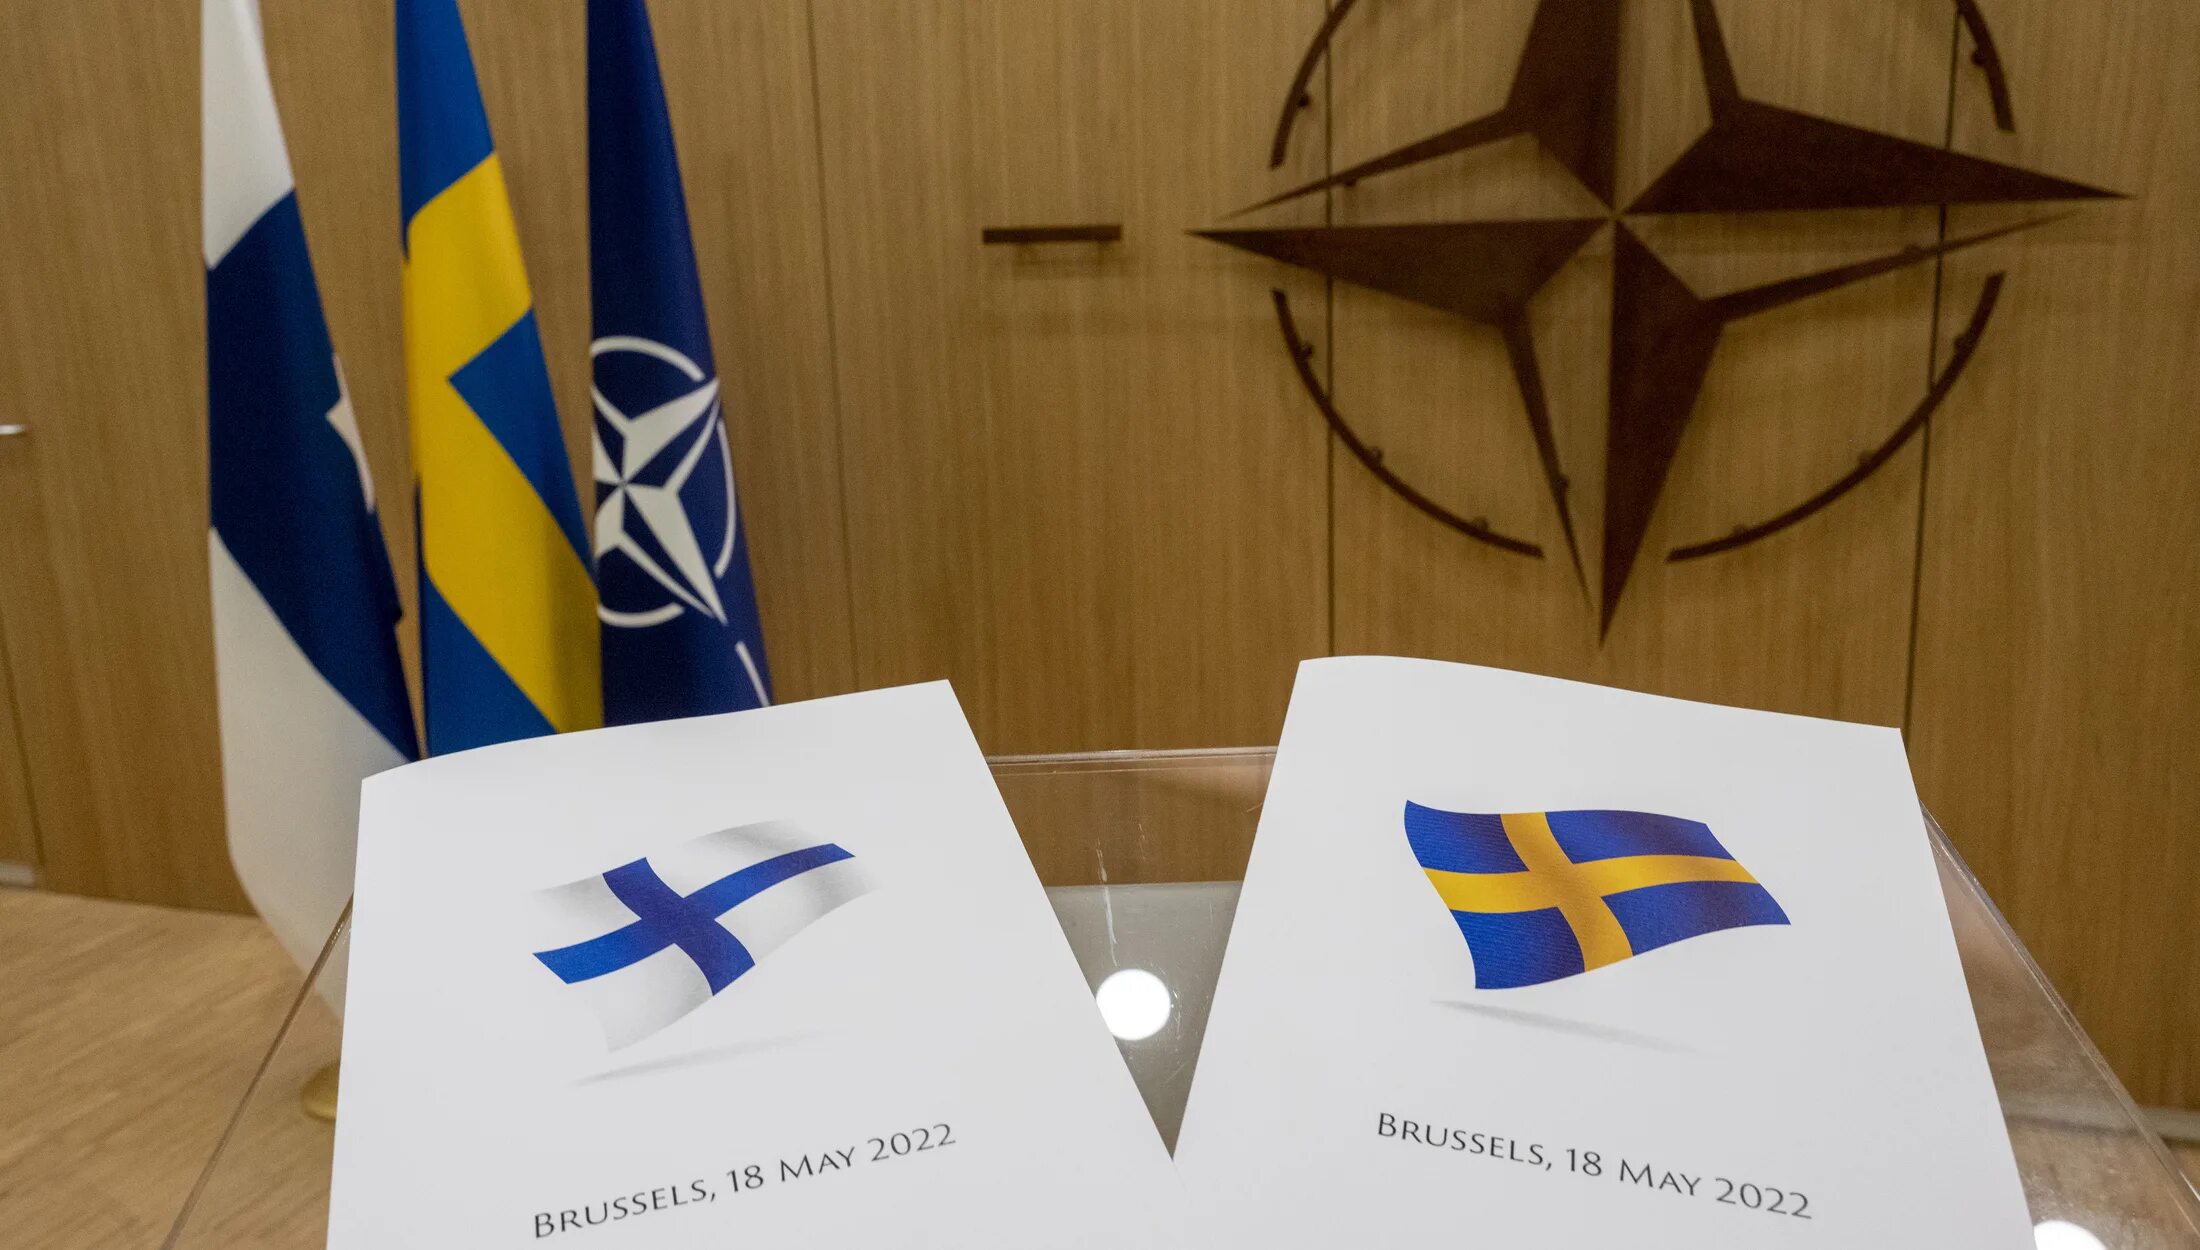 Вступление швеции и финляндии в нато. Североатлантический Альянс НАТО. Швеция и Финляндия вступление в НАТО. Финляндия в НАТО 2022. Вступление Финляндии и Швеции в НАТО 2022.